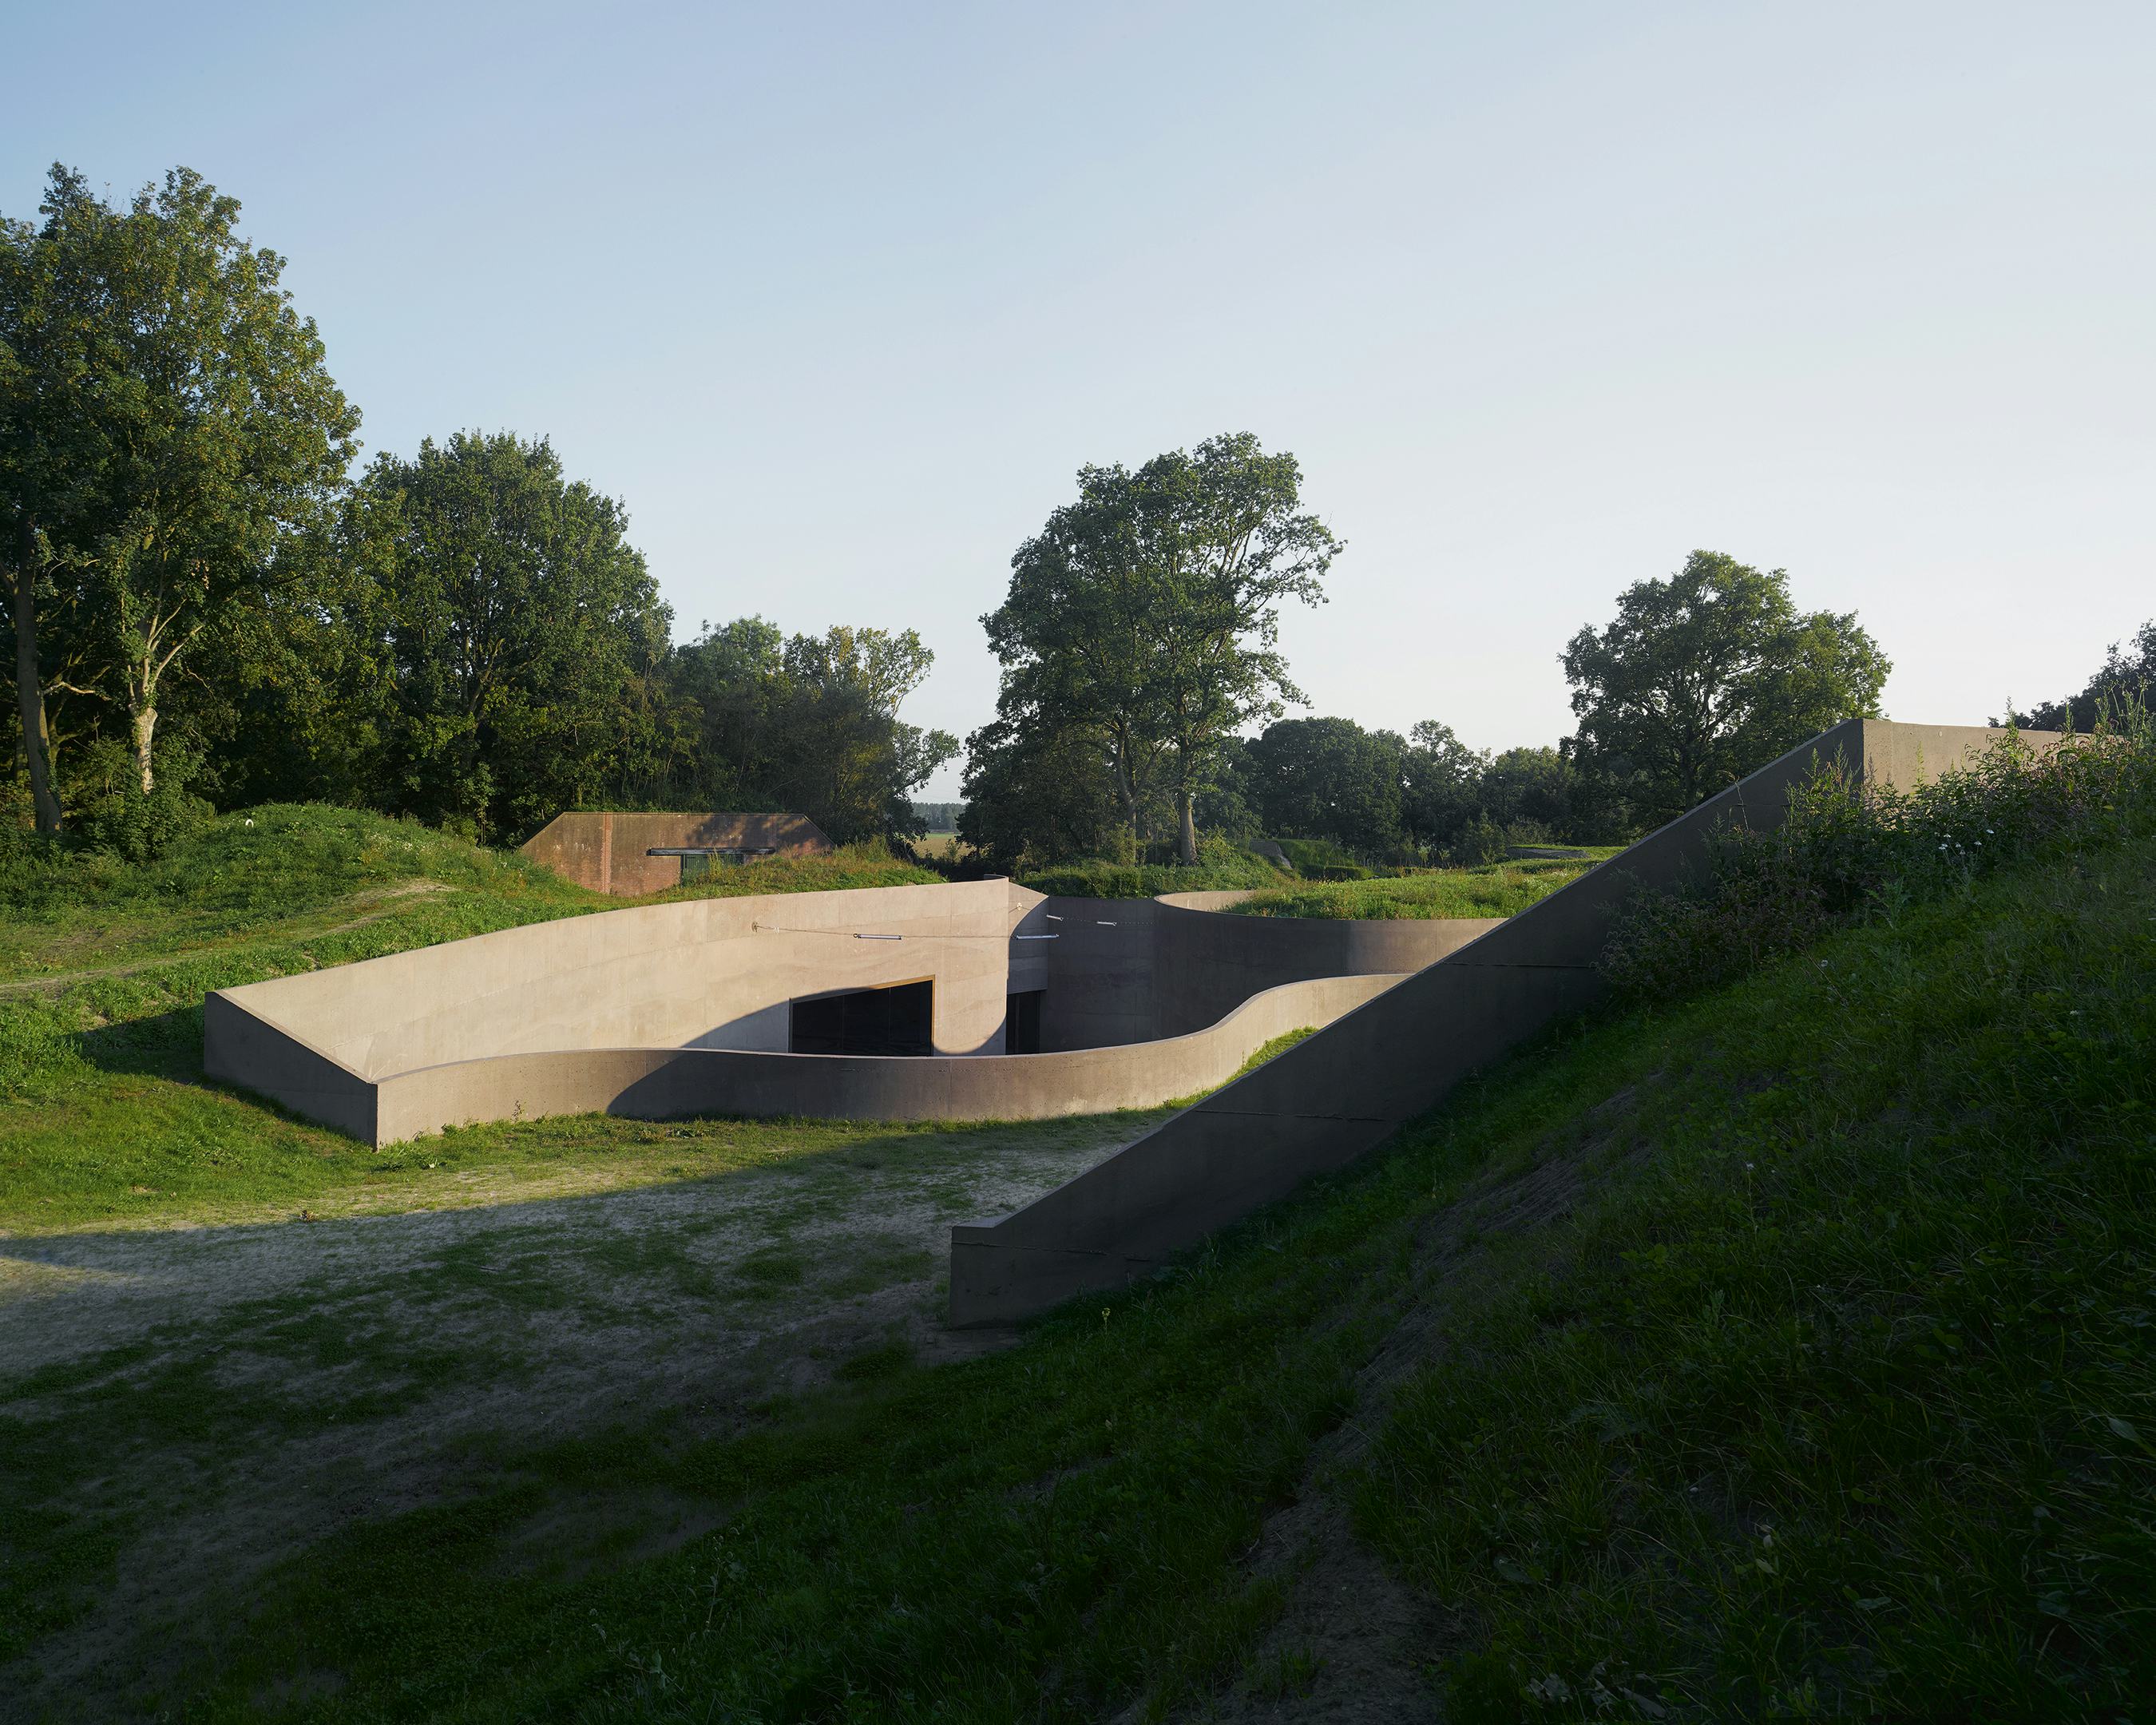 Het Nationaal Waterliniemuseum Fort bij Vechten gaat op in de grillige lijnen van het landschap - Beeld Bas Princen